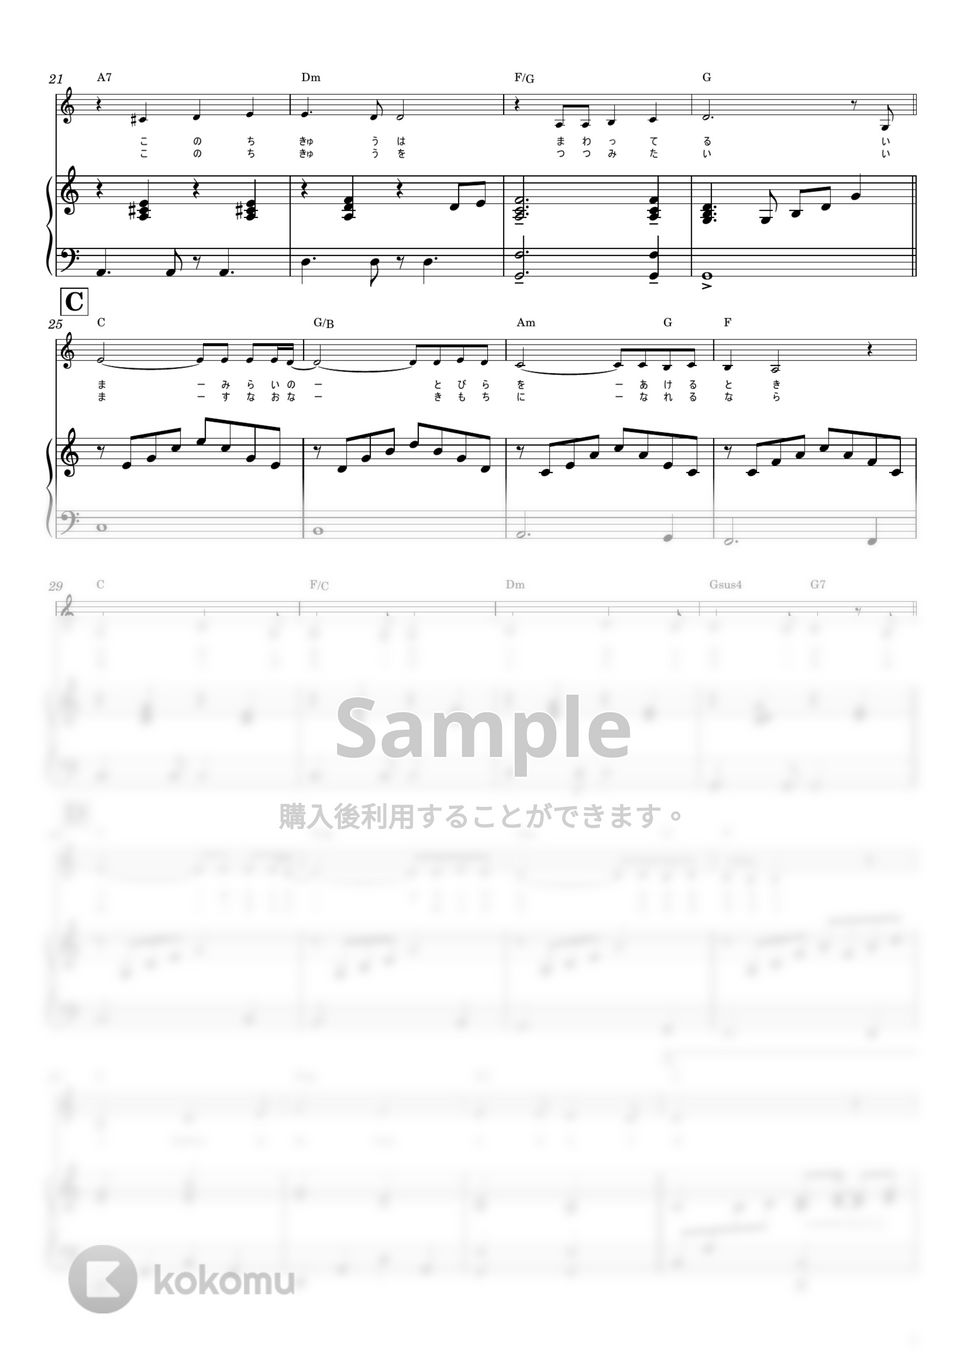 BELIEVE (ピアノ伴奏/弾き語り/フルサイズ) by ムジカランド　hana